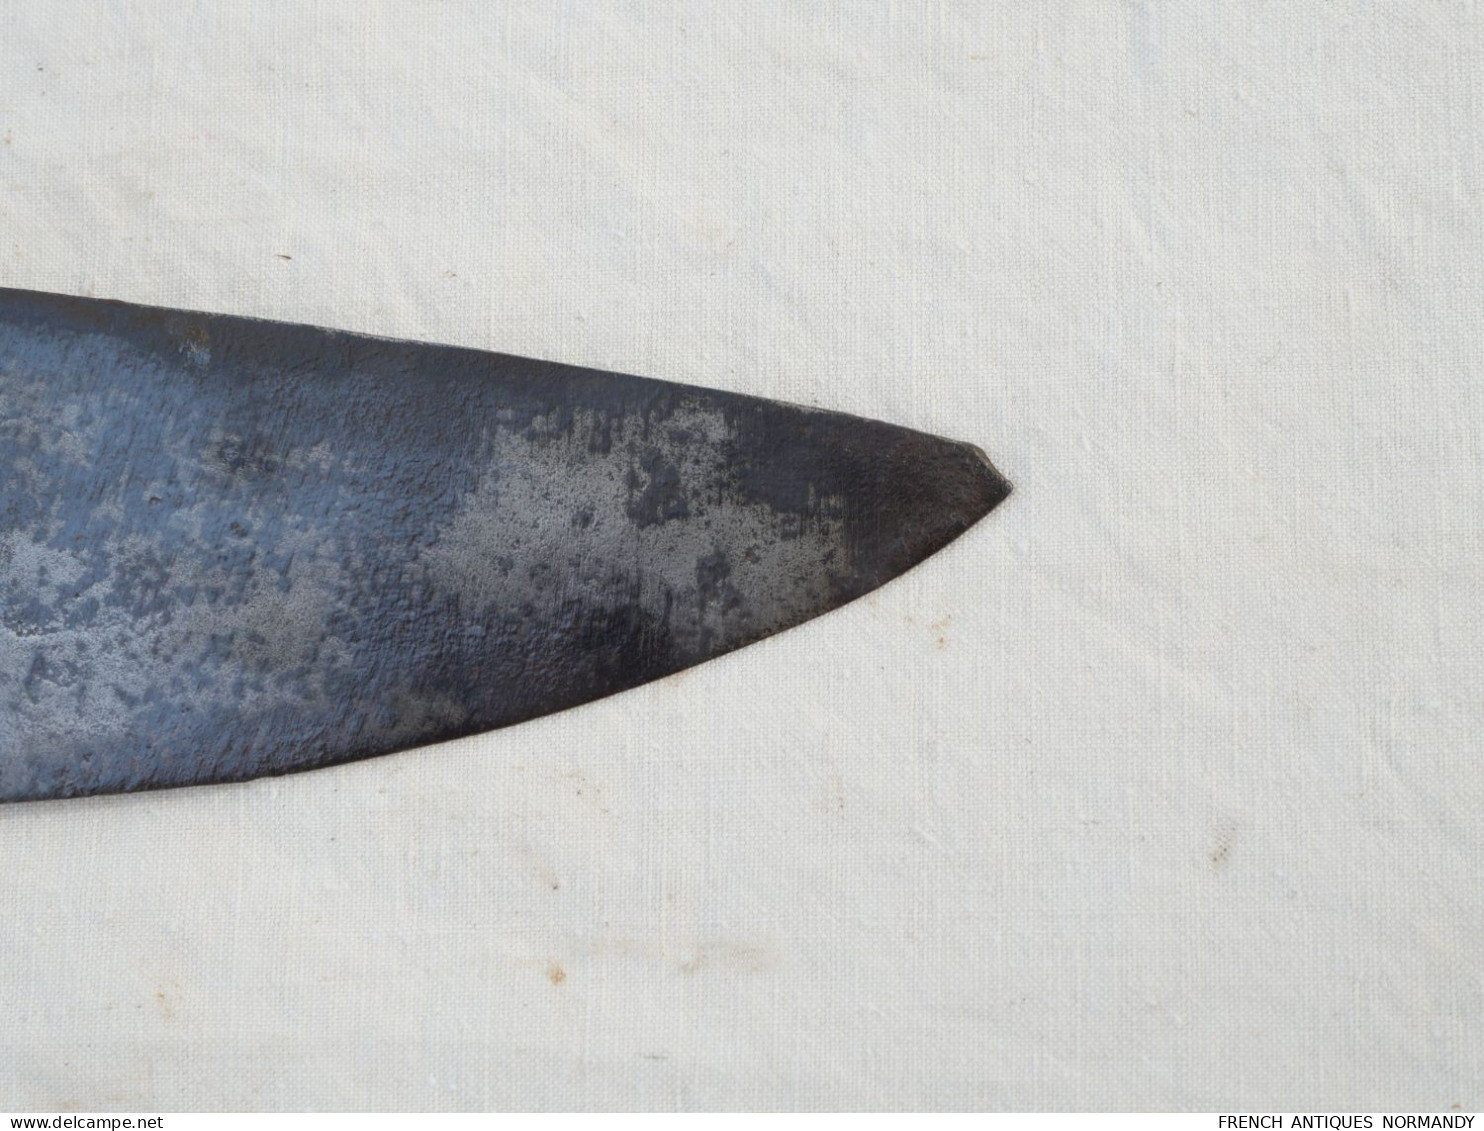 Arme antique - lourde dague ou épée courte en fonte de fer monobloc - origine et époque inconnues